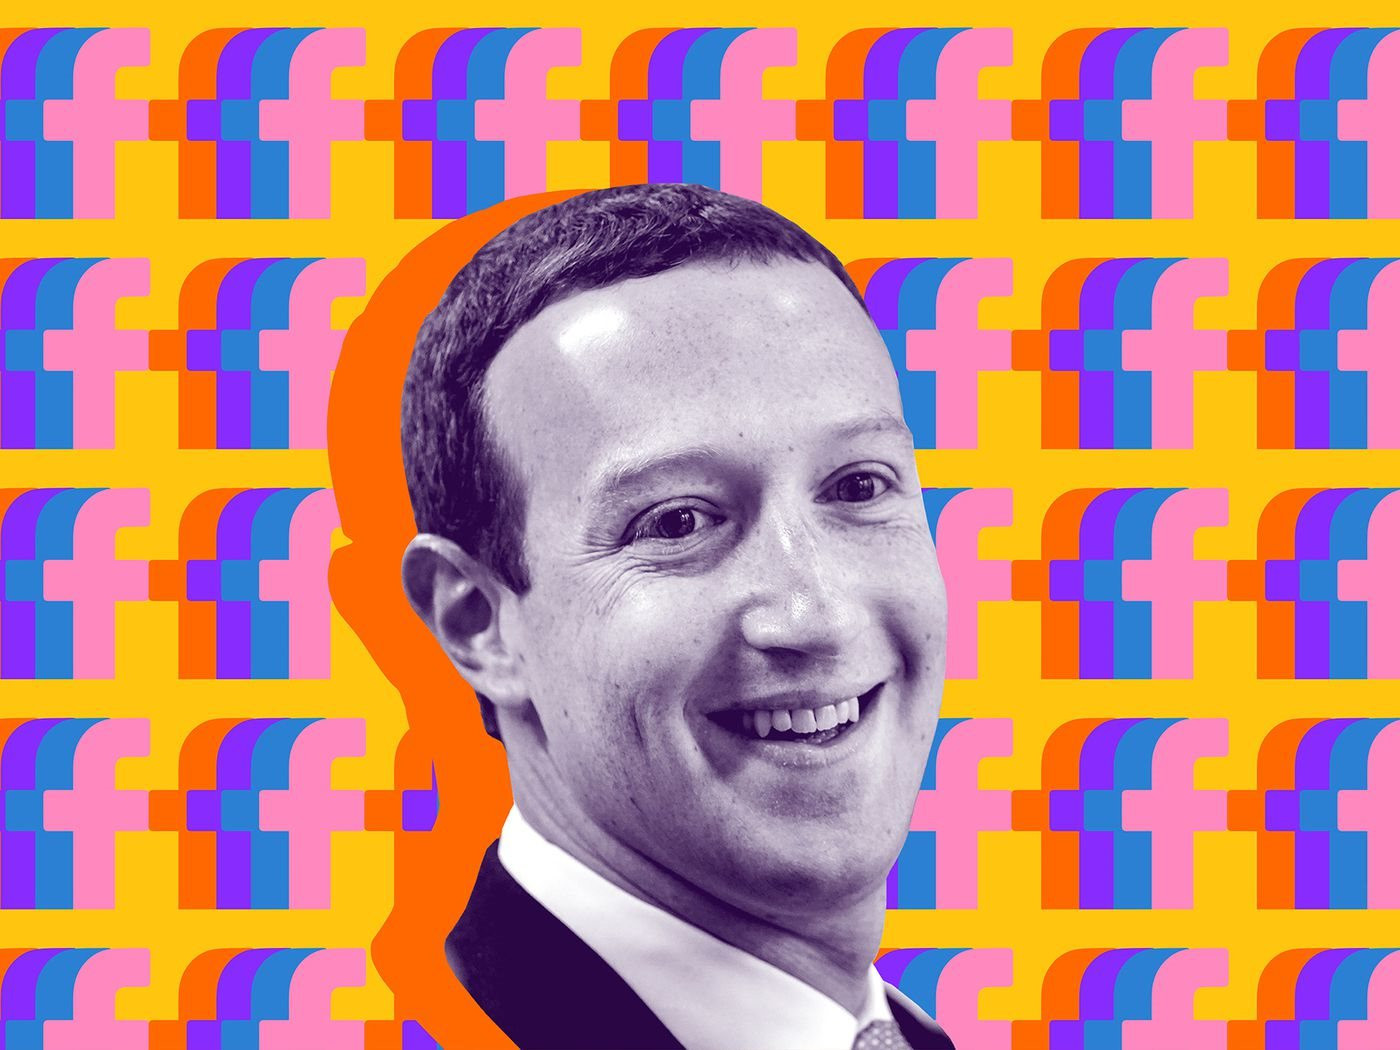 Canh bạc thứ 2 của Mark Zuckerberg: Trở thành kẻ bị bỏ rơi trong cuộc chiến AI, tham gia sớm nhưng giờ bị hắt hủi vì tuyển toàn các 'chuyên gia' - Ảnh 1.